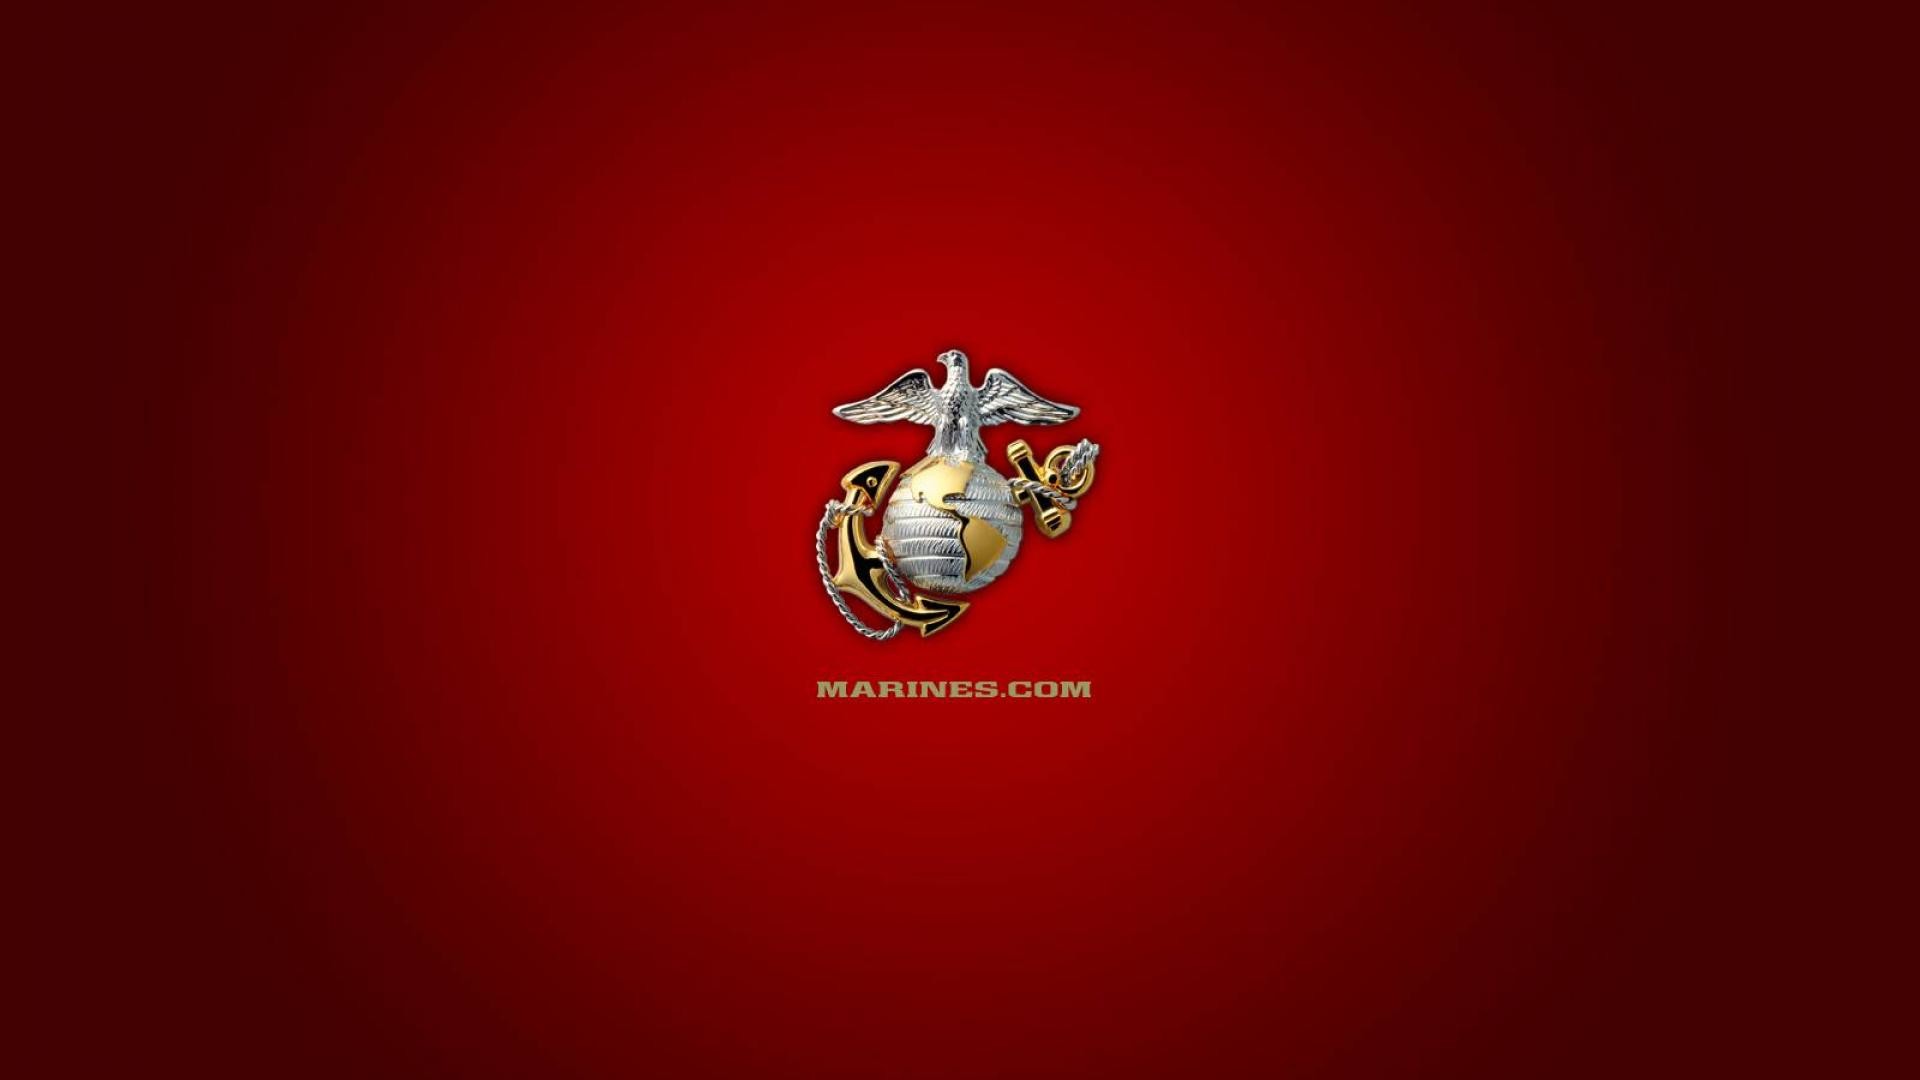 1920x1080 Marines ega wallpaper HQ WALLPAPER - (#14324)